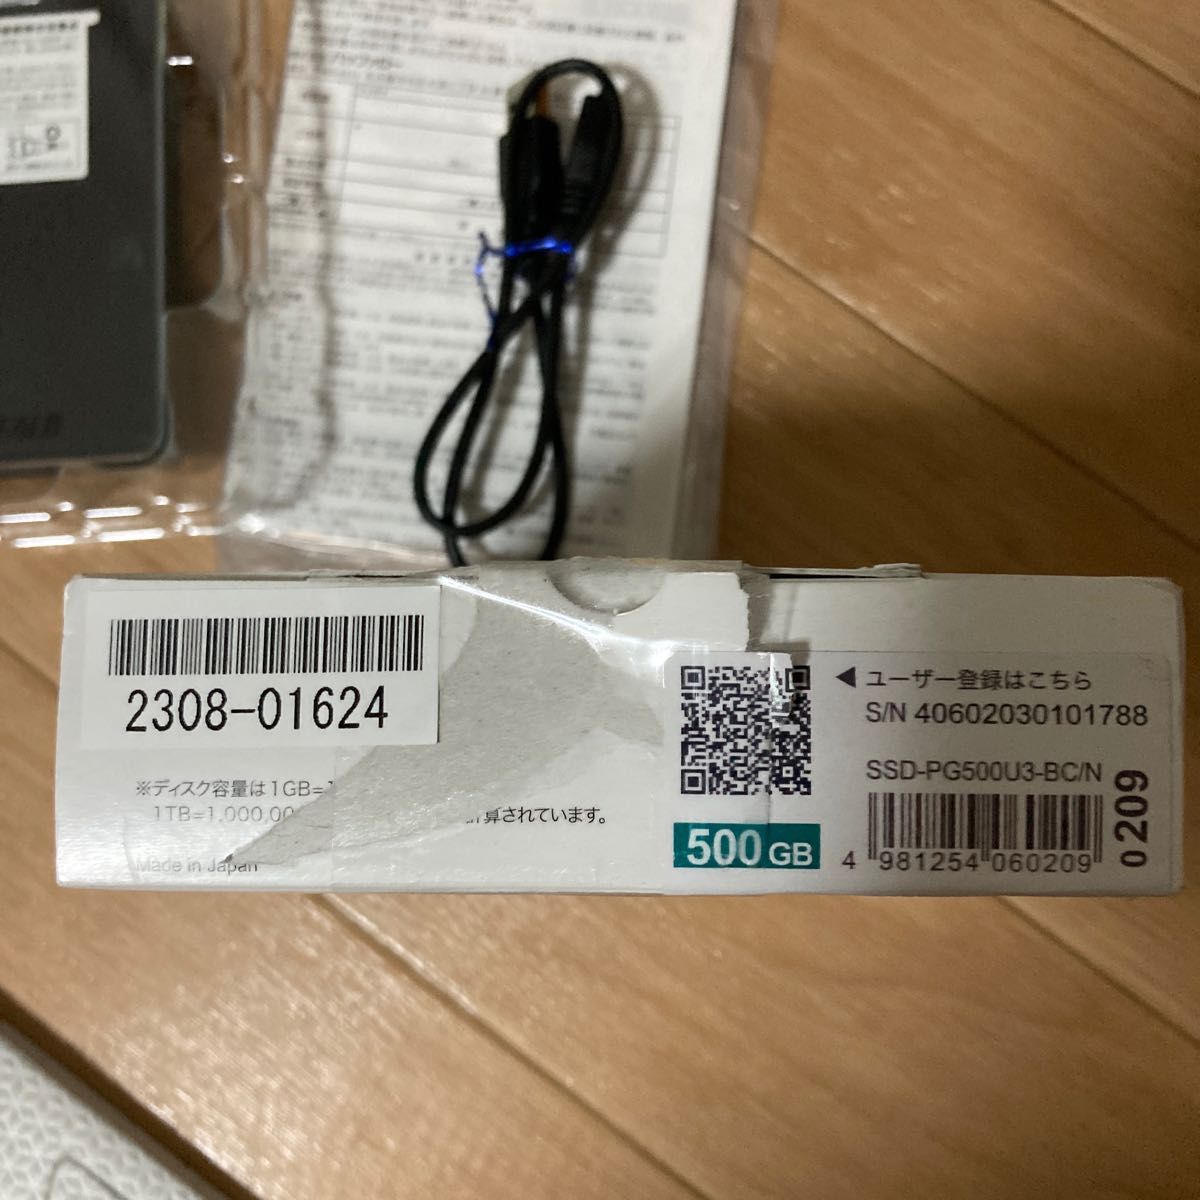 SSD-PG500U3-BC/N [SSD-PG-C/Nシリーズ 500GB]